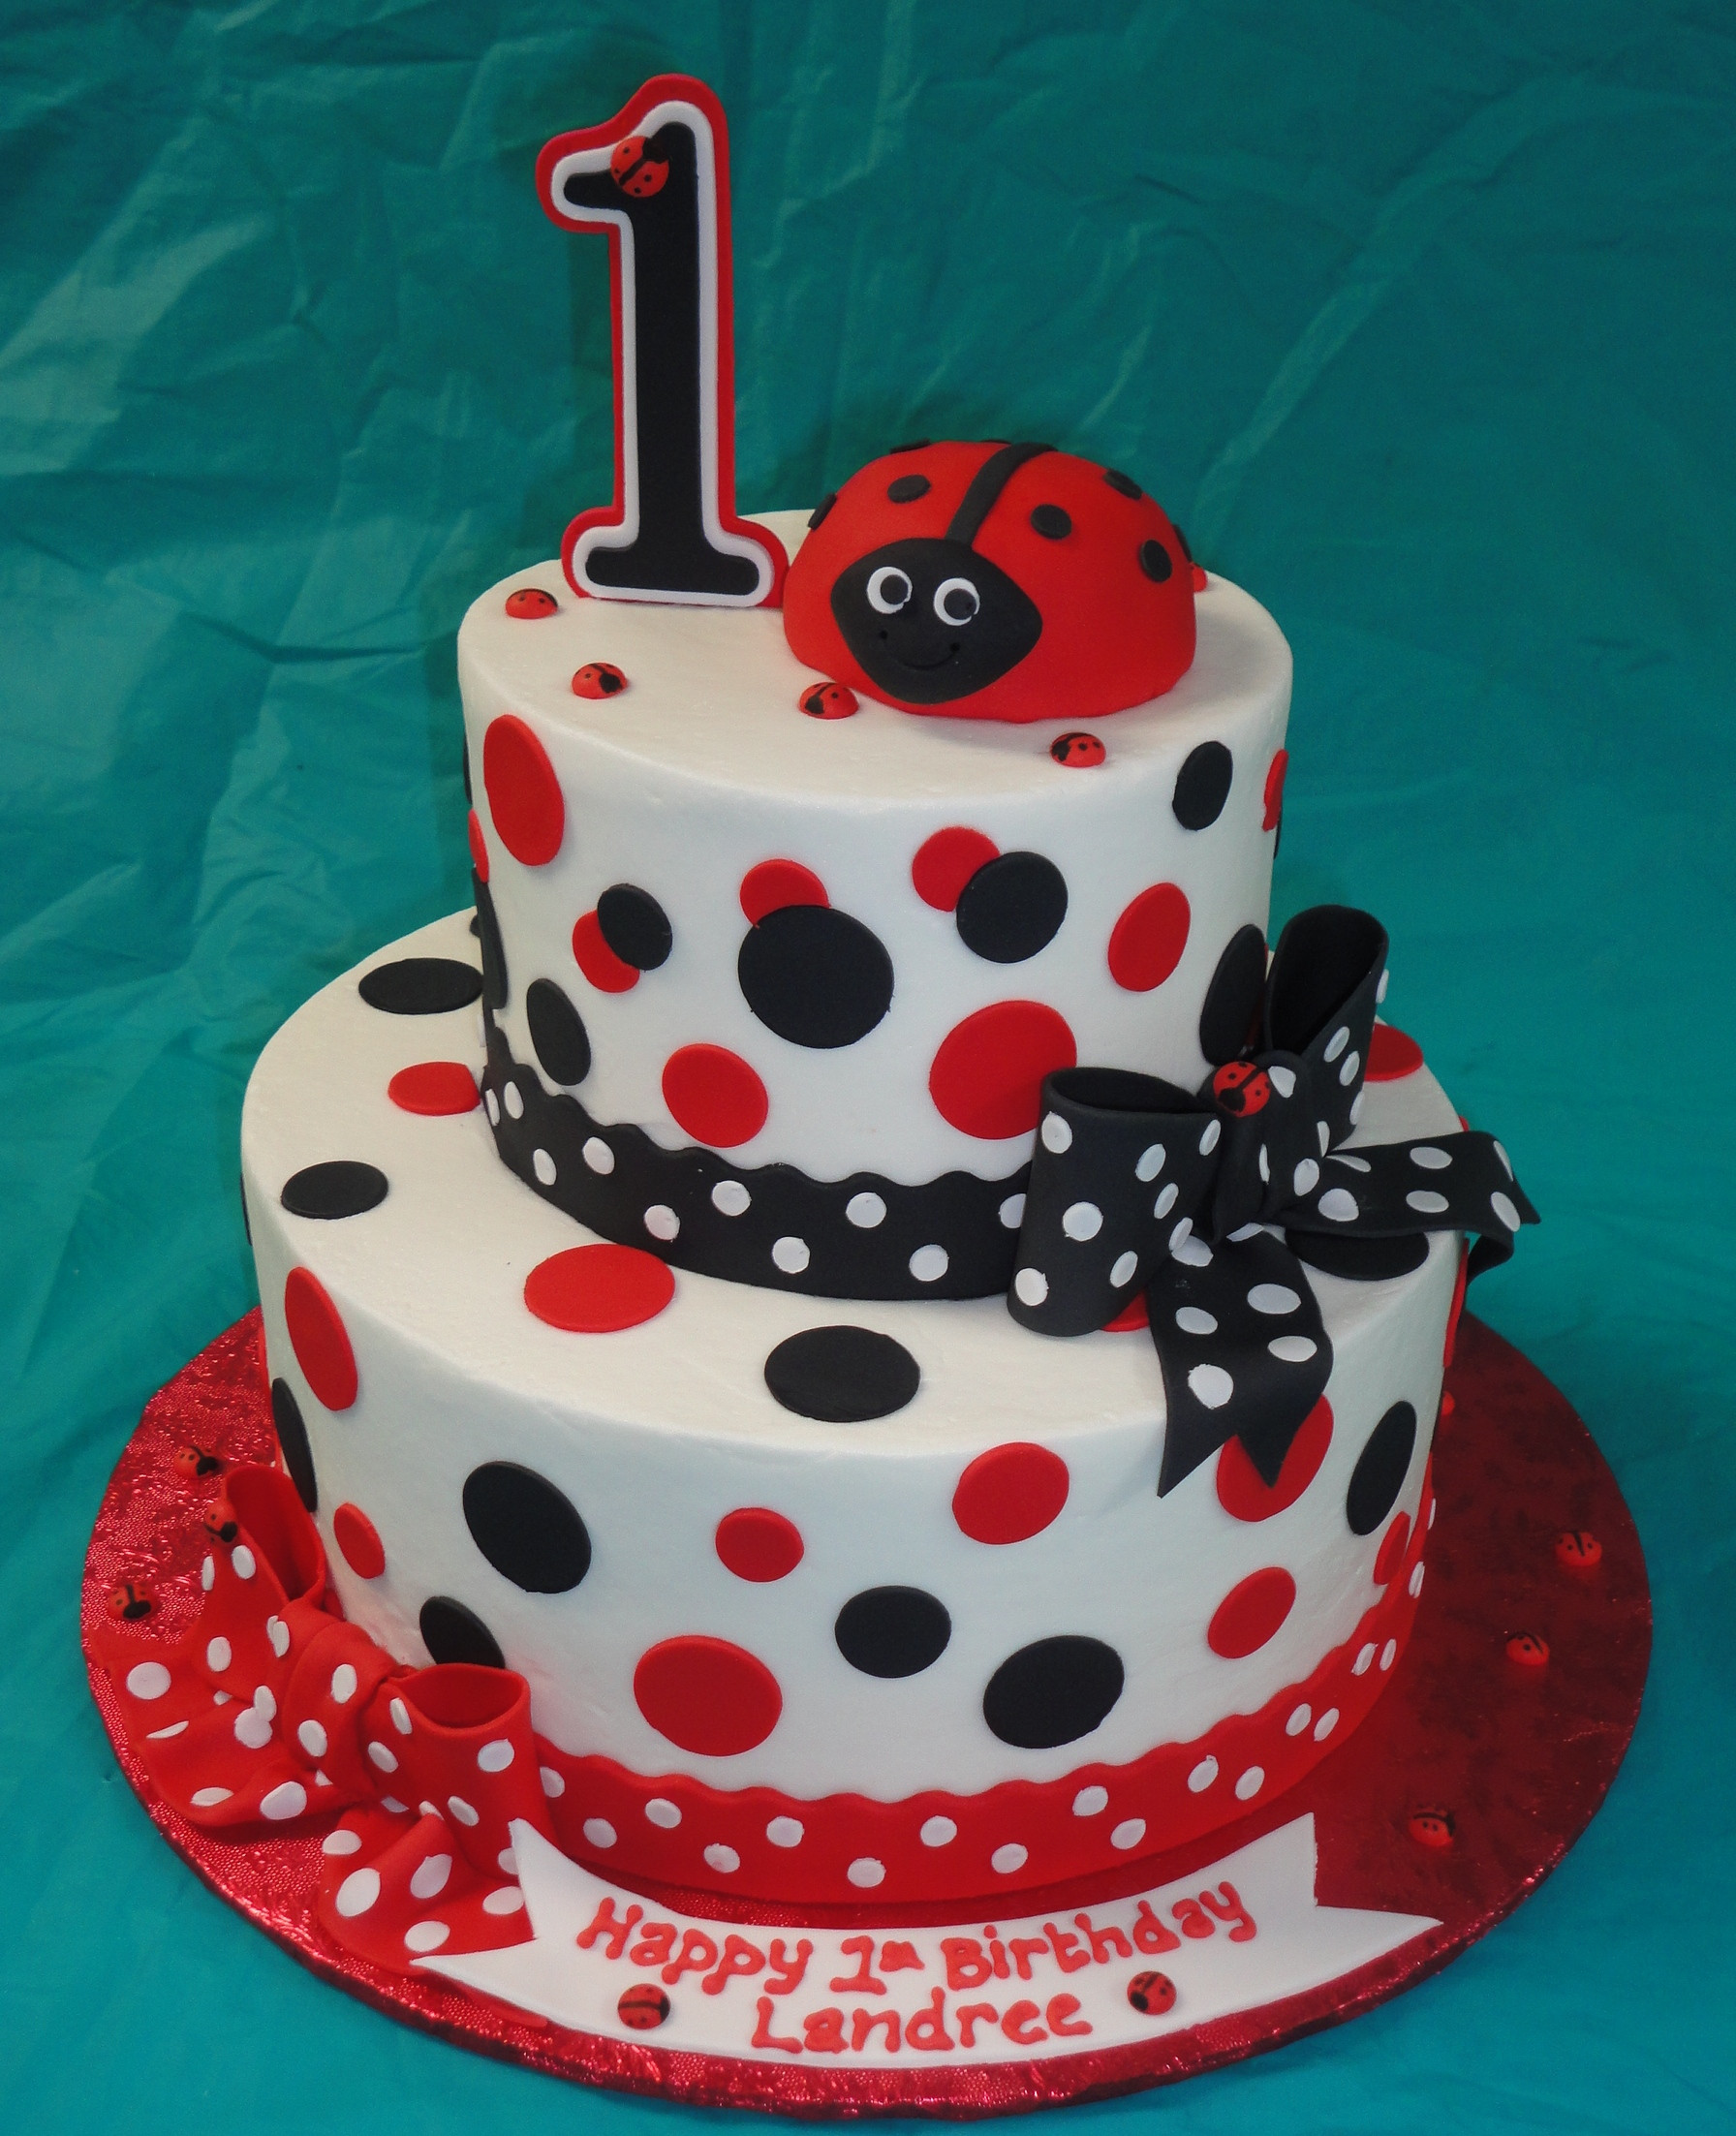 Ladybug Birthday Cakes
 Ladybug Cakes – Decoration Ideas